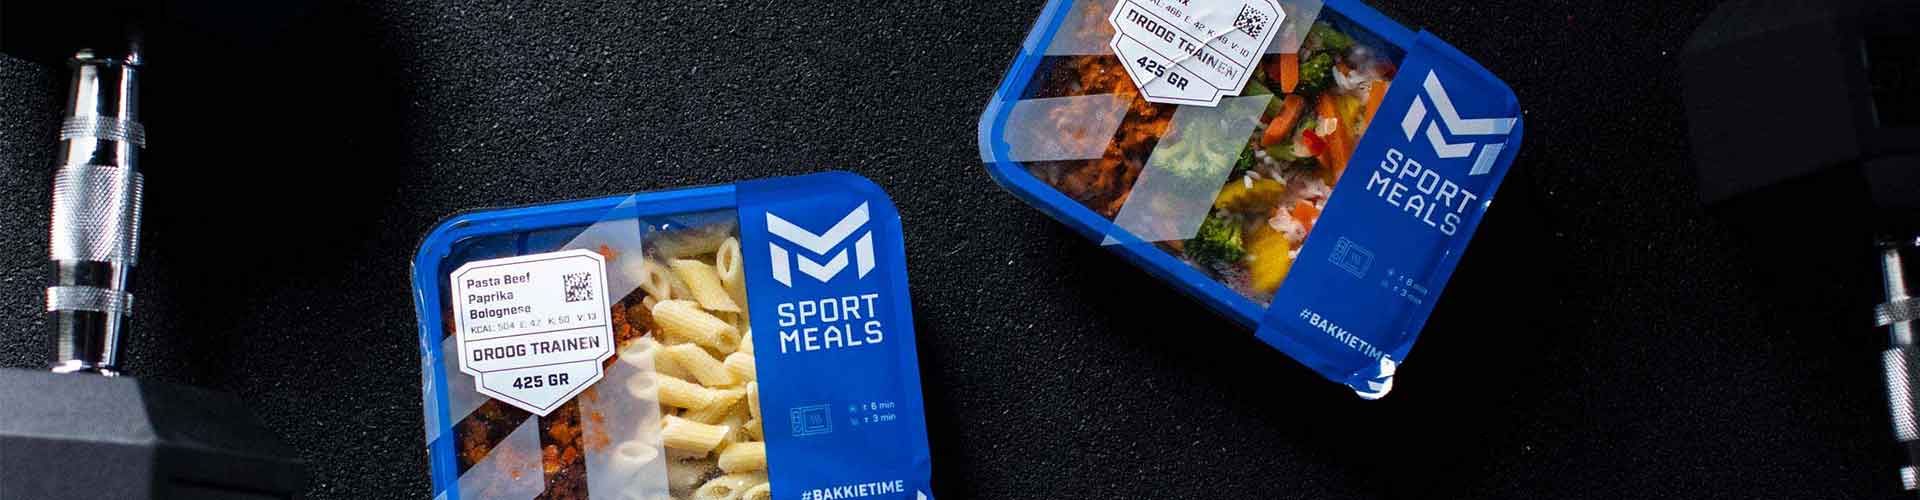 SportMeals High Protein Meals in de sportschool